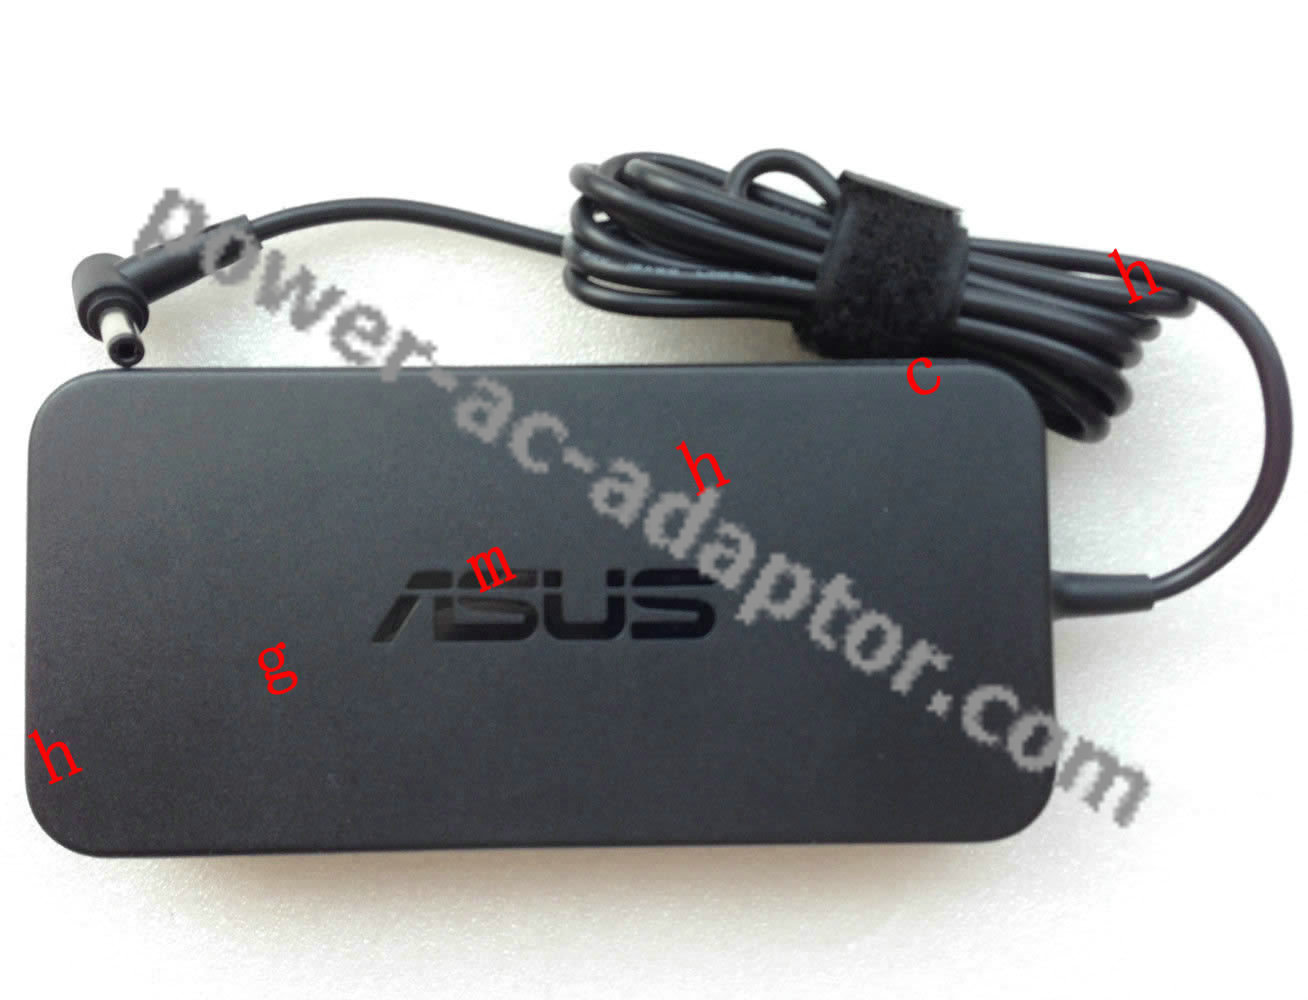 ASUS 120W Slim AC Adapter for ASUS N550JV-DB72T/i7-4700HQ Notebo